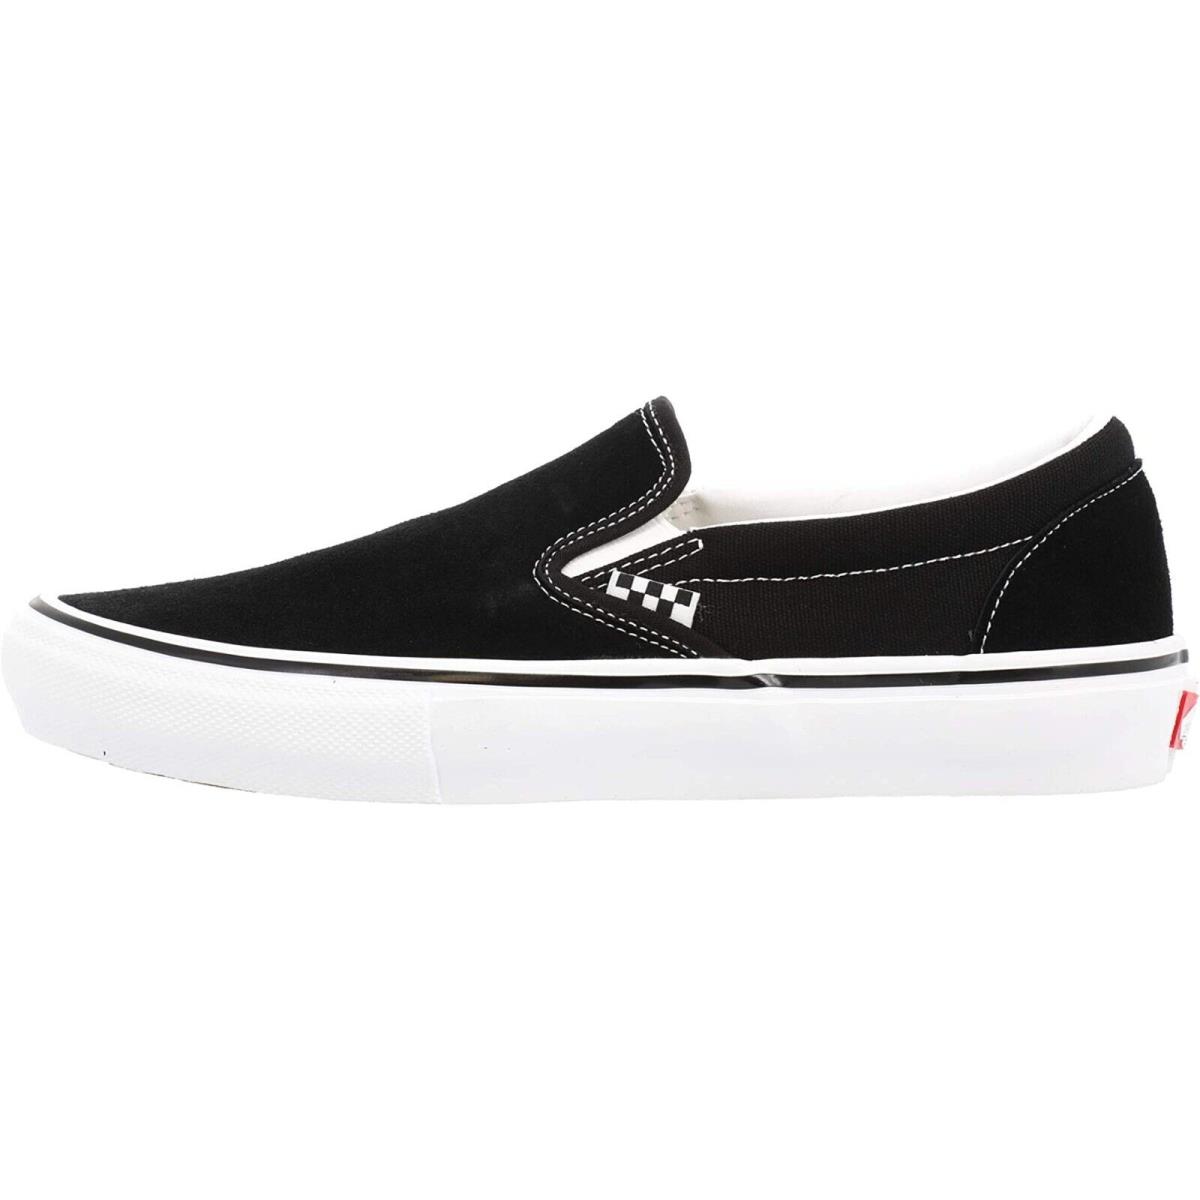 Vans Classic Slip-on Unisex Men Women Skate Shoes Canvas Sneakers (Skate) Black/White